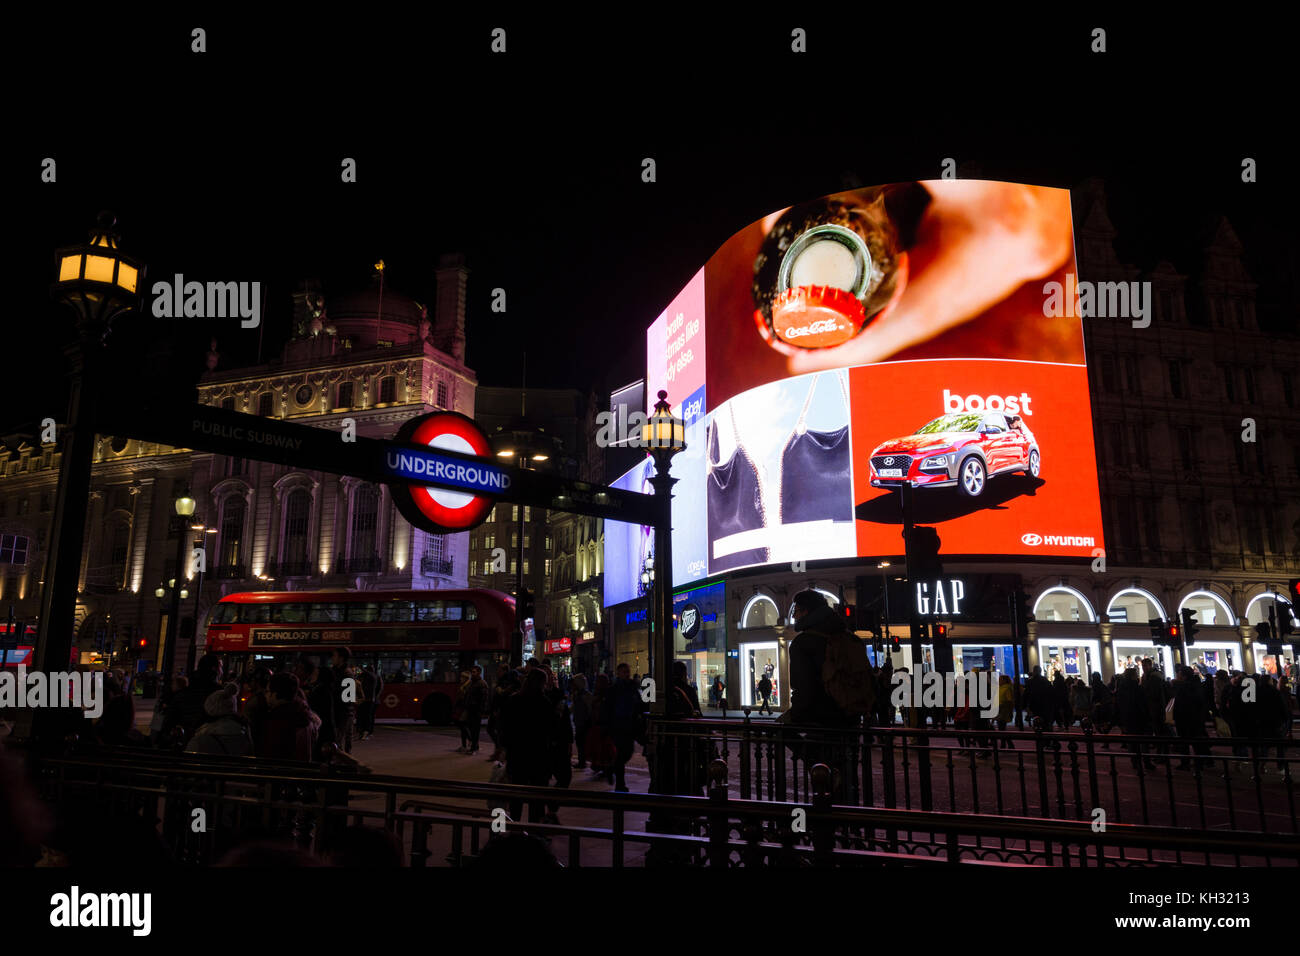 Die ikonischen Piccadilly Lichter, wissen jetzt, wie die Kurve, High-tech, state-of-the-art, Upgrade mit der größten LED-Display in Europa gehabt haben. Stockfoto